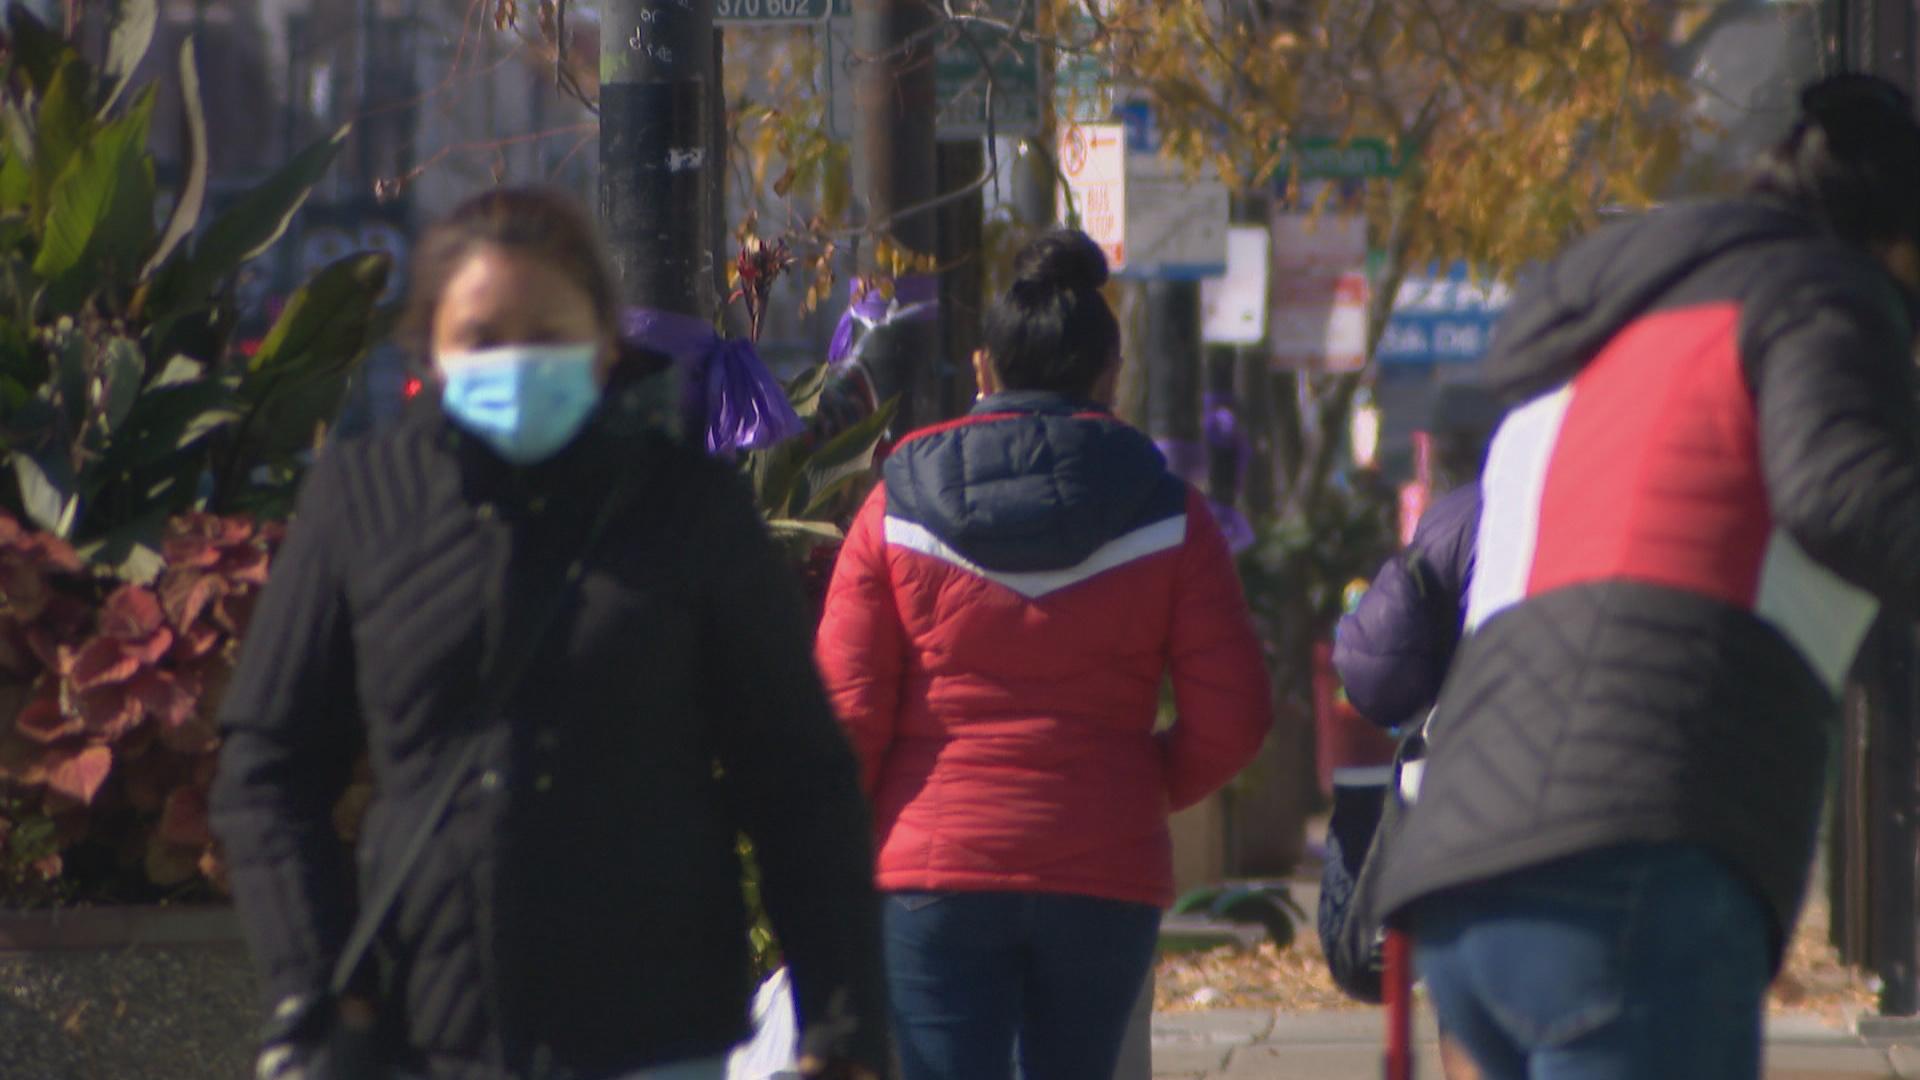 People wearing masks walk along the street in Little Village. (WTTW News)